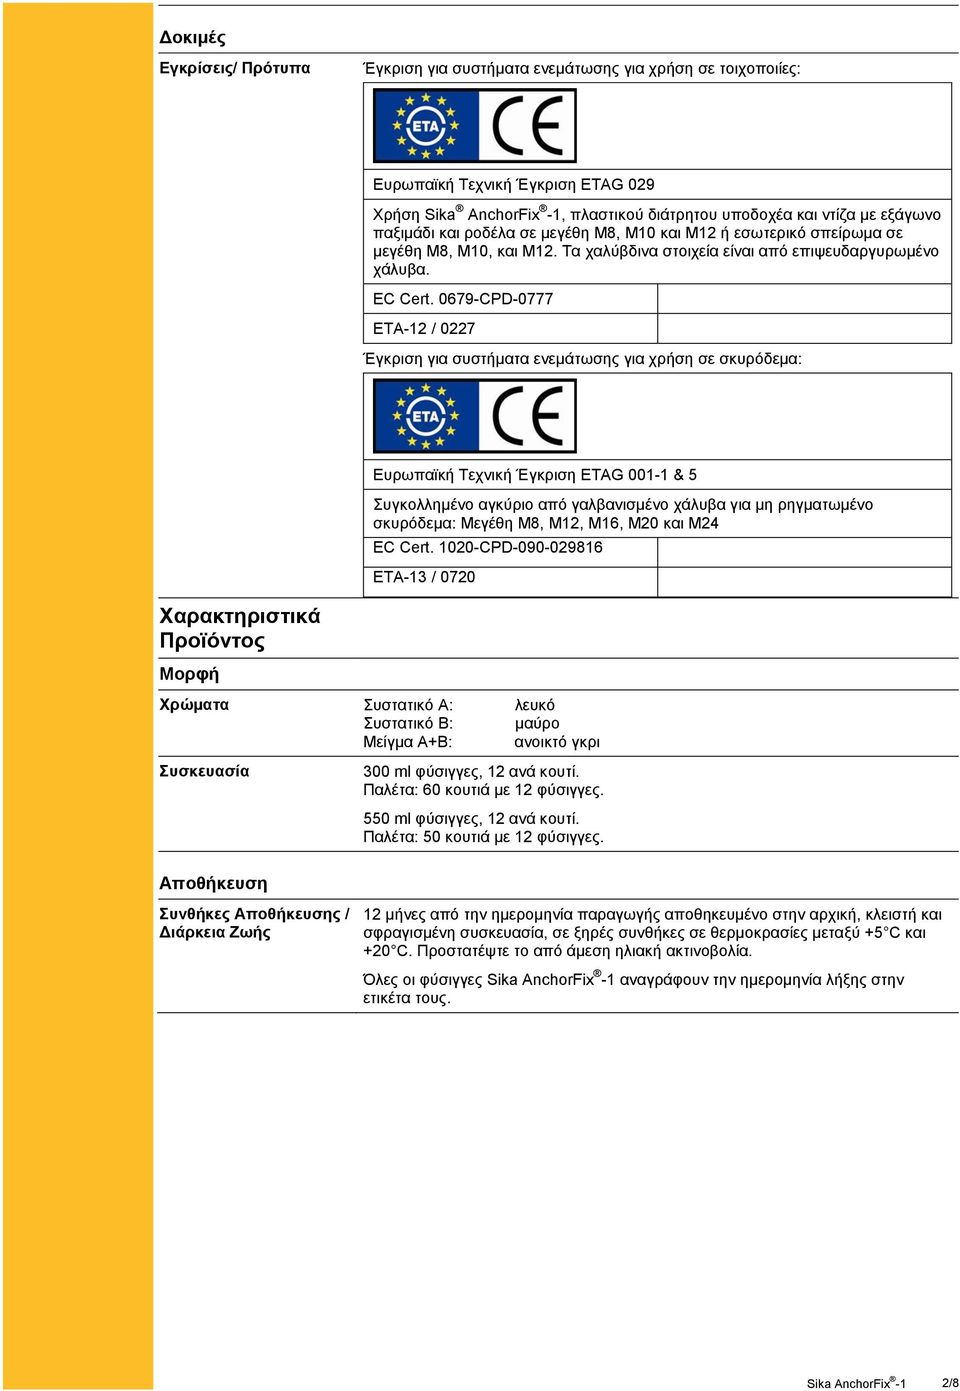 0679-CPD-0777 ETA-12 / 0227 Έγκριση για συστήματα ενεμάτωσης για χρήση σε σκυρόδεμα: Χαρακτηριστικά Προϊόντος Μορφή Ευρωπαϊκή Τεχνική Έγκριση ETAG 001-1 & 5 Συγκολλημένο αγκύριο από γαλβανισμένο